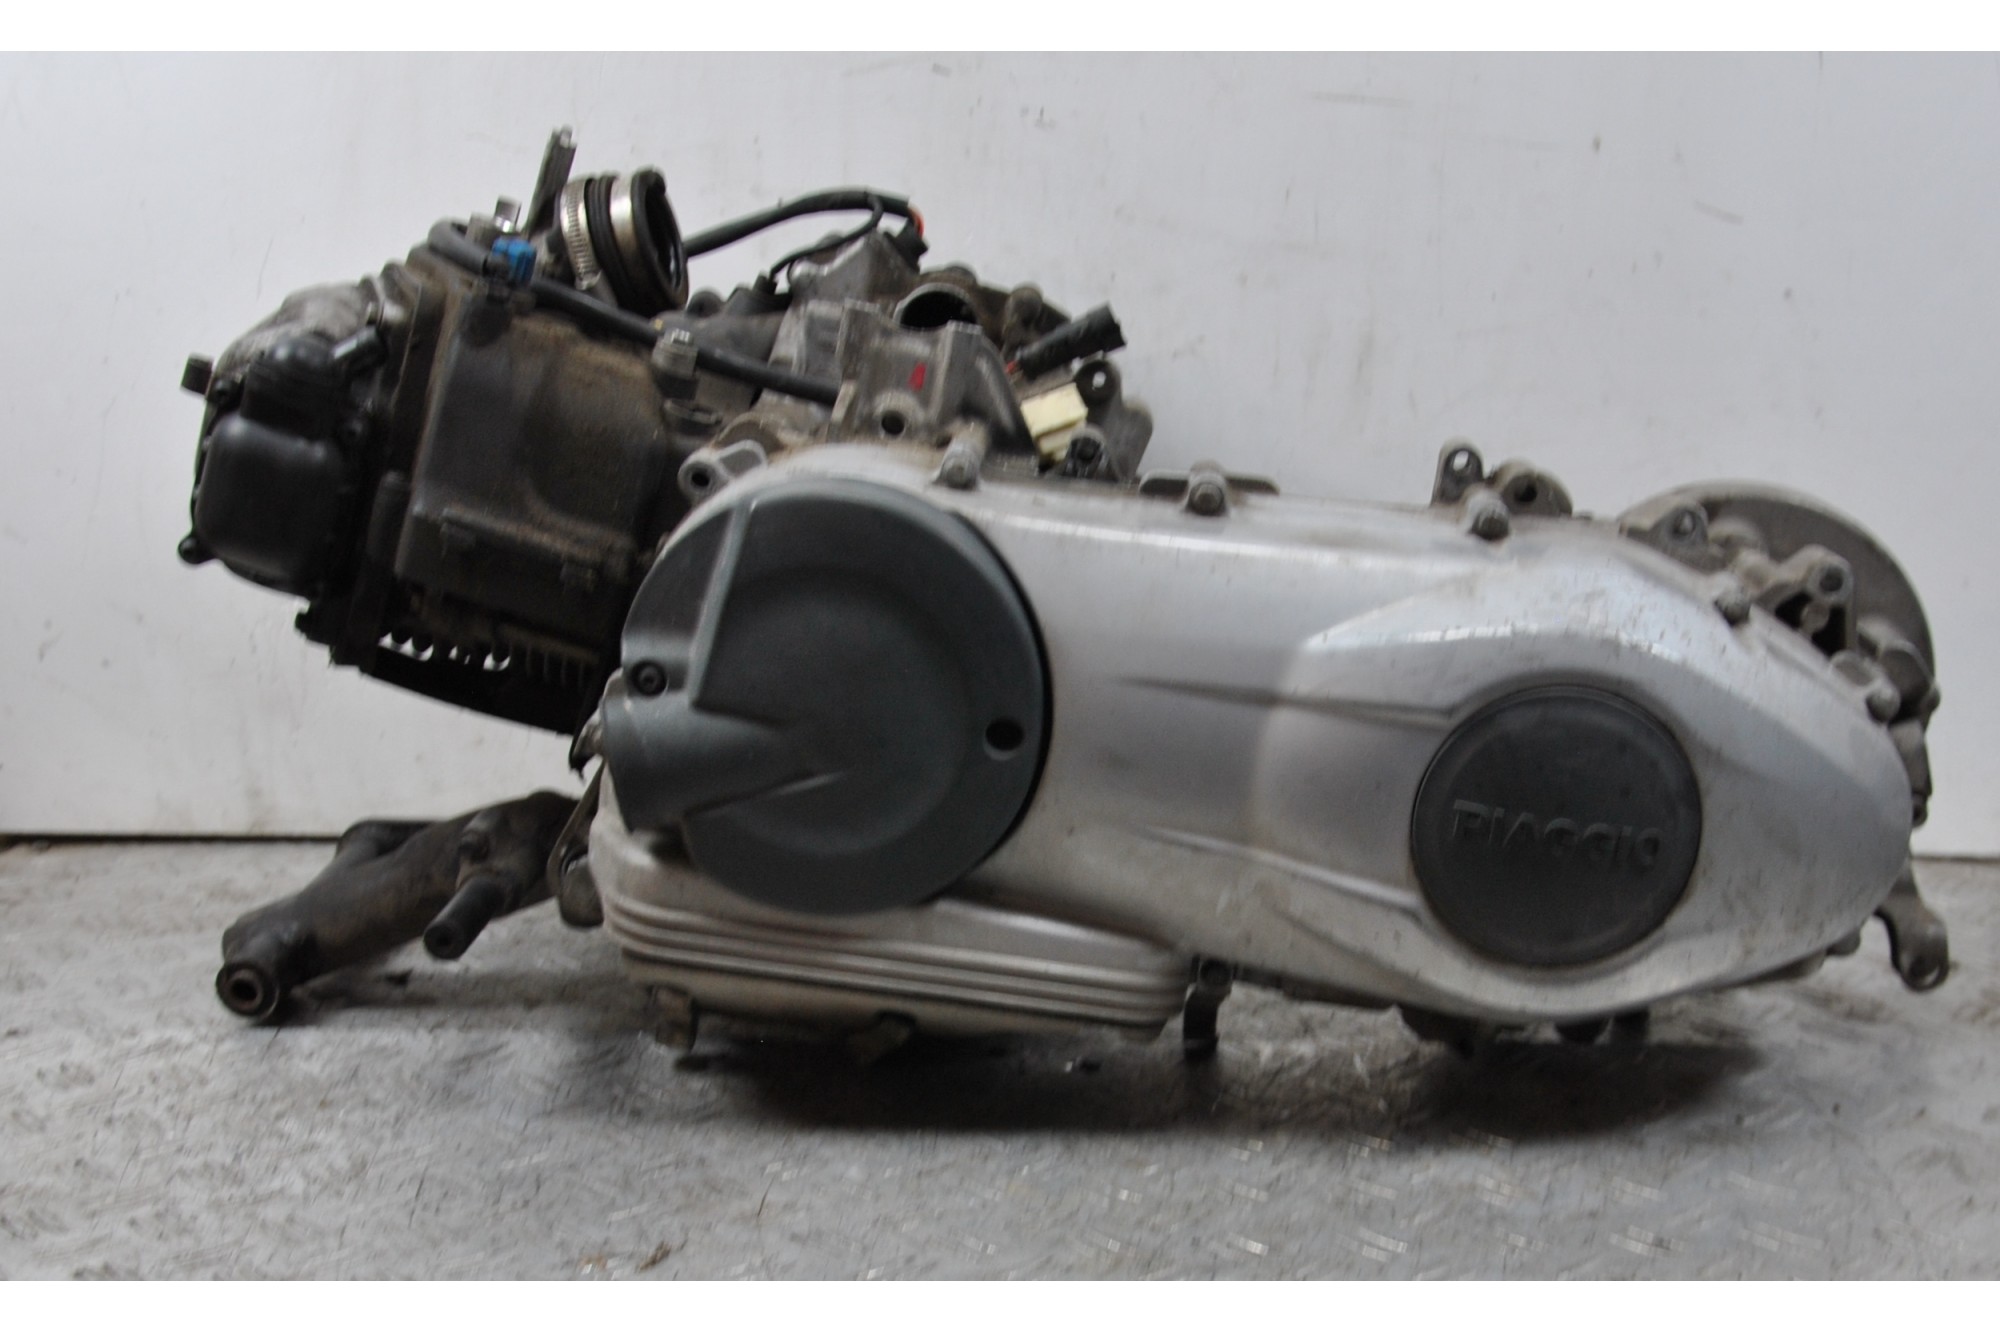 Blocco Motore Piaggio Liberty 150 3V dal 2013 al 2015 Cod M738M Num 500194115  1663680305026